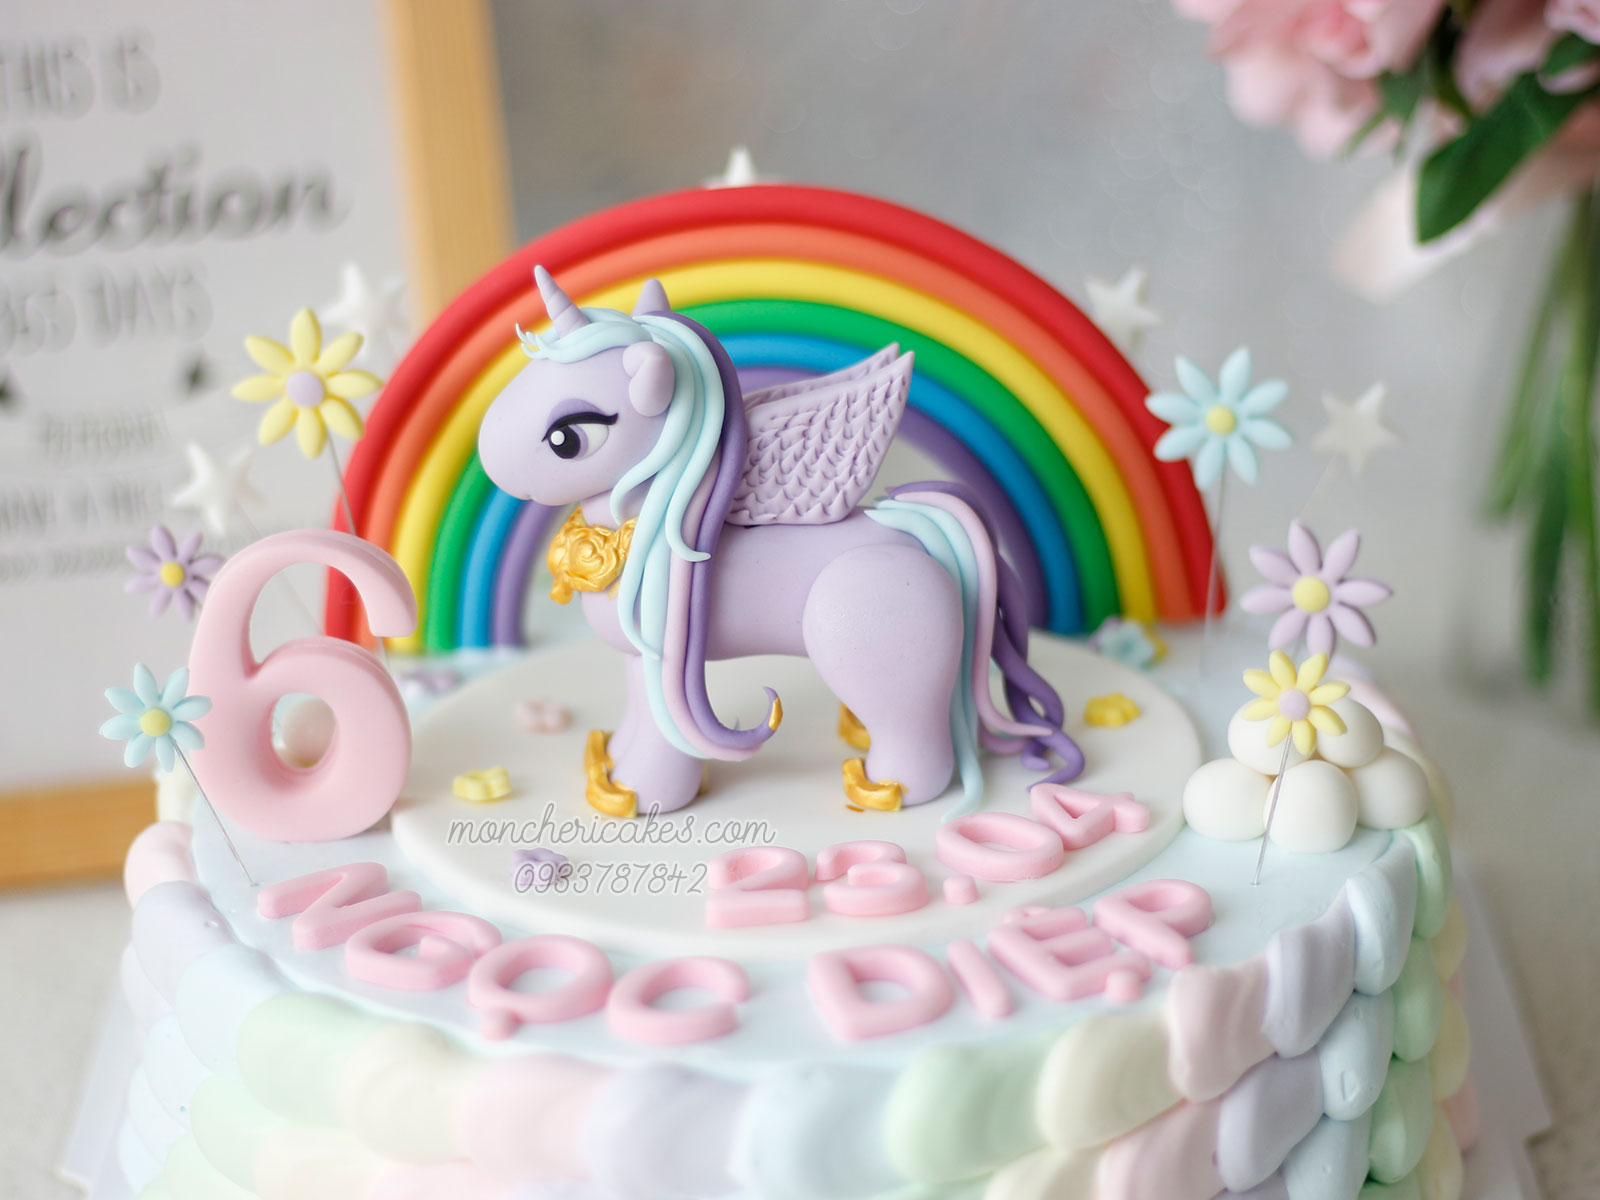 Hãy đến và xem hình ảnh của chúng tôi về một chiếc bánh sinh nhật đầy vui nhộn và ngộ nghĩnh với hình ảnh ngựa Pony đáng yêu! Nó sẽ khiến bất kỳ ai cũng cười đầy thích thú.